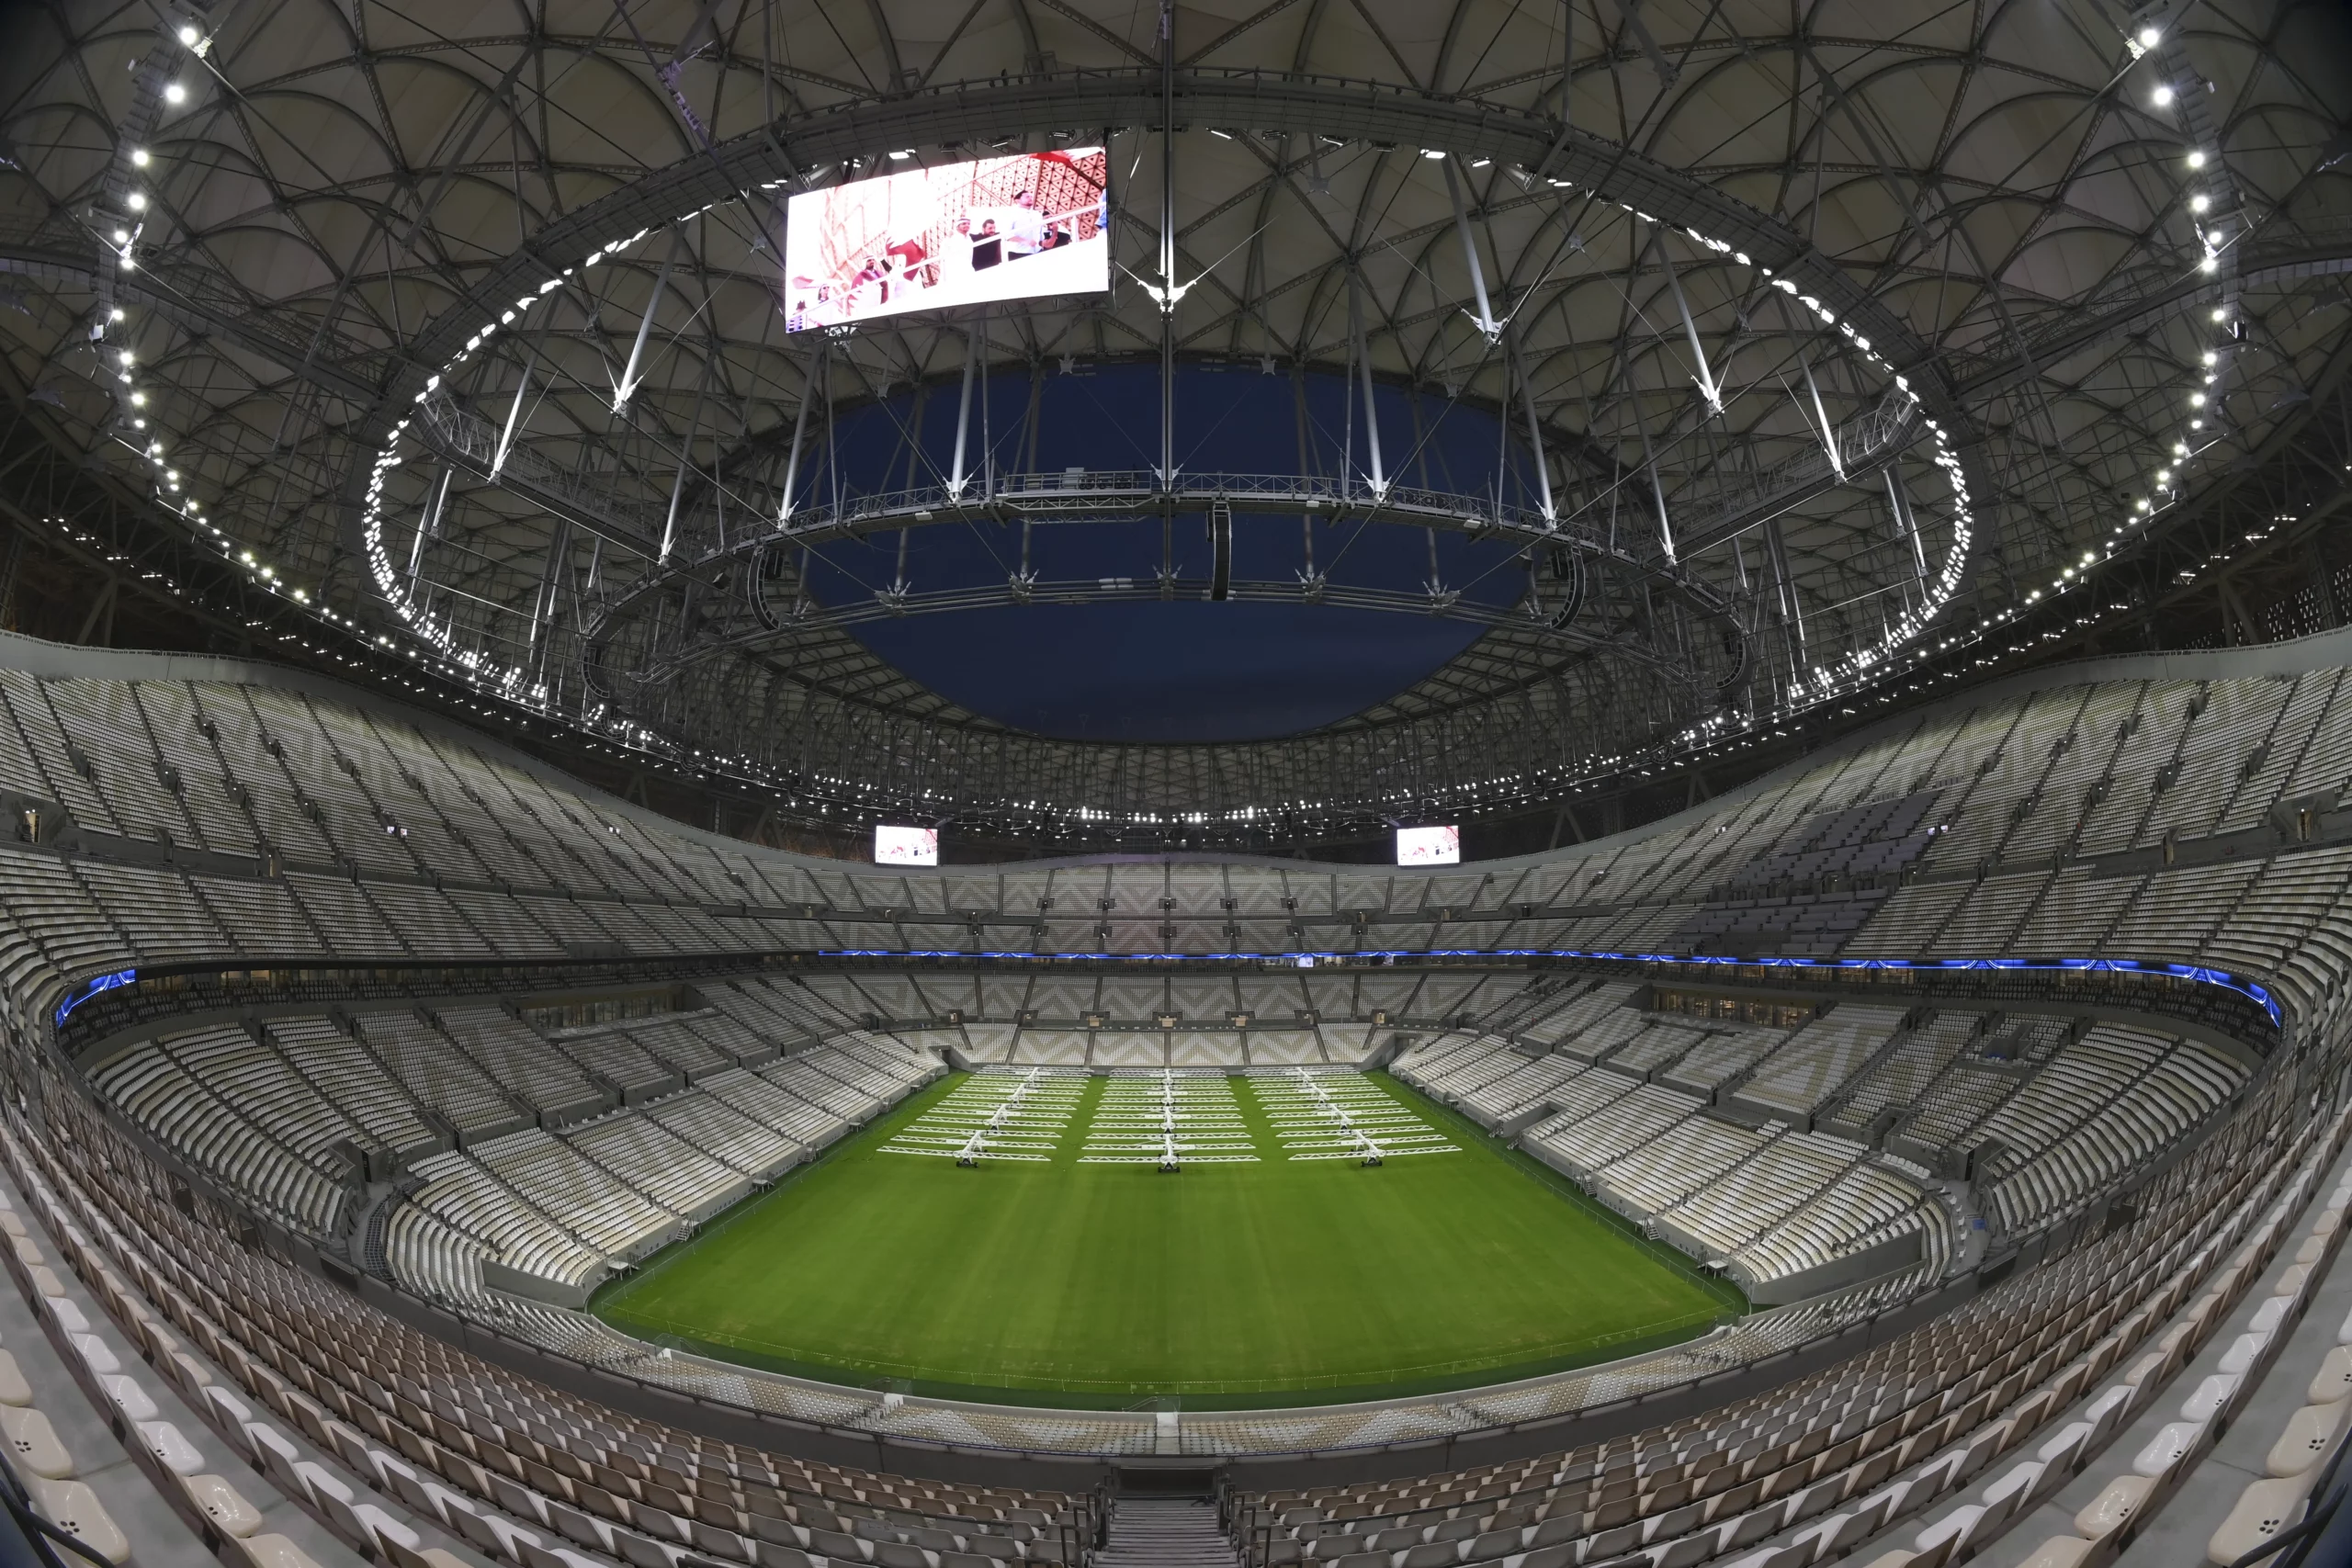 Maak kennis met de 8 prachtige stadions van het WK 2022